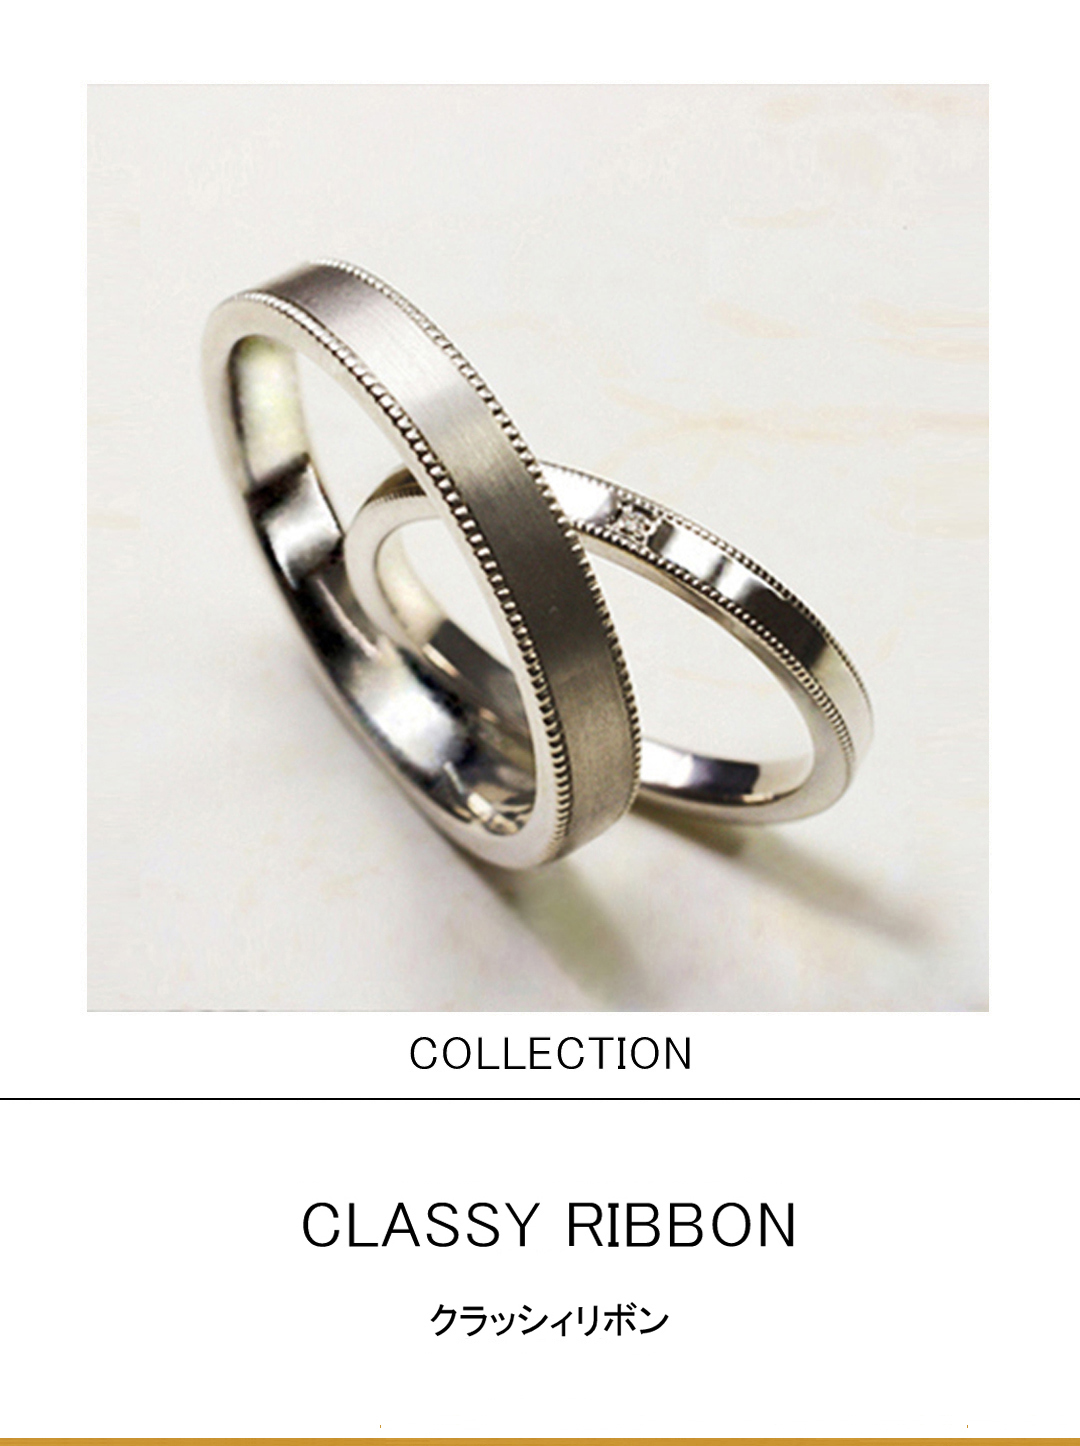 【プラチナのリボン】をデザインしたミルグレインの結婚指輪のサムネイル